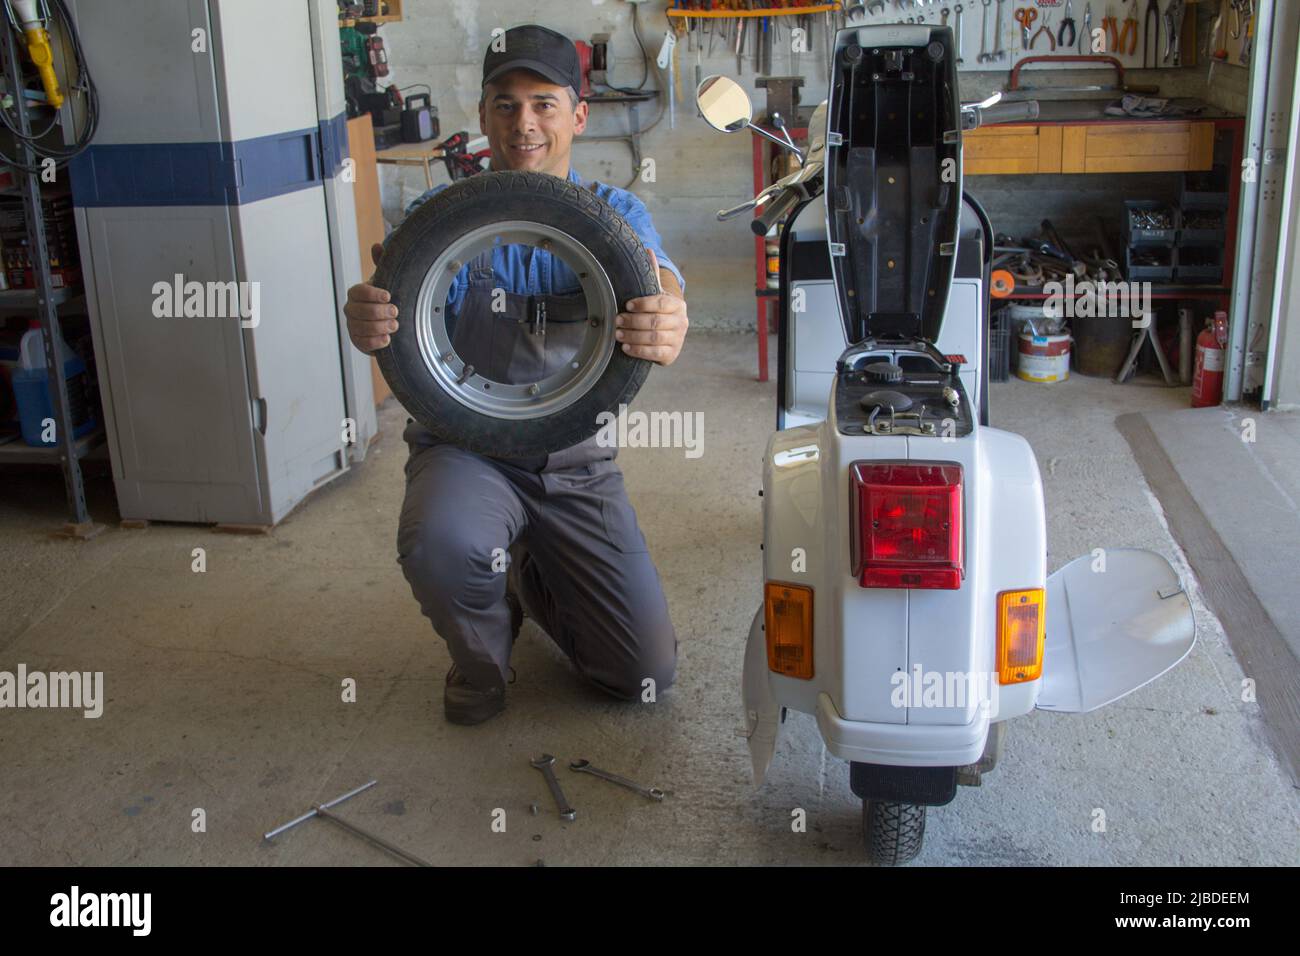 Image d'un mécanicien souriant dans son atelier tenant une roue de la moto qu'il est en train de réparer. Banque D'Images